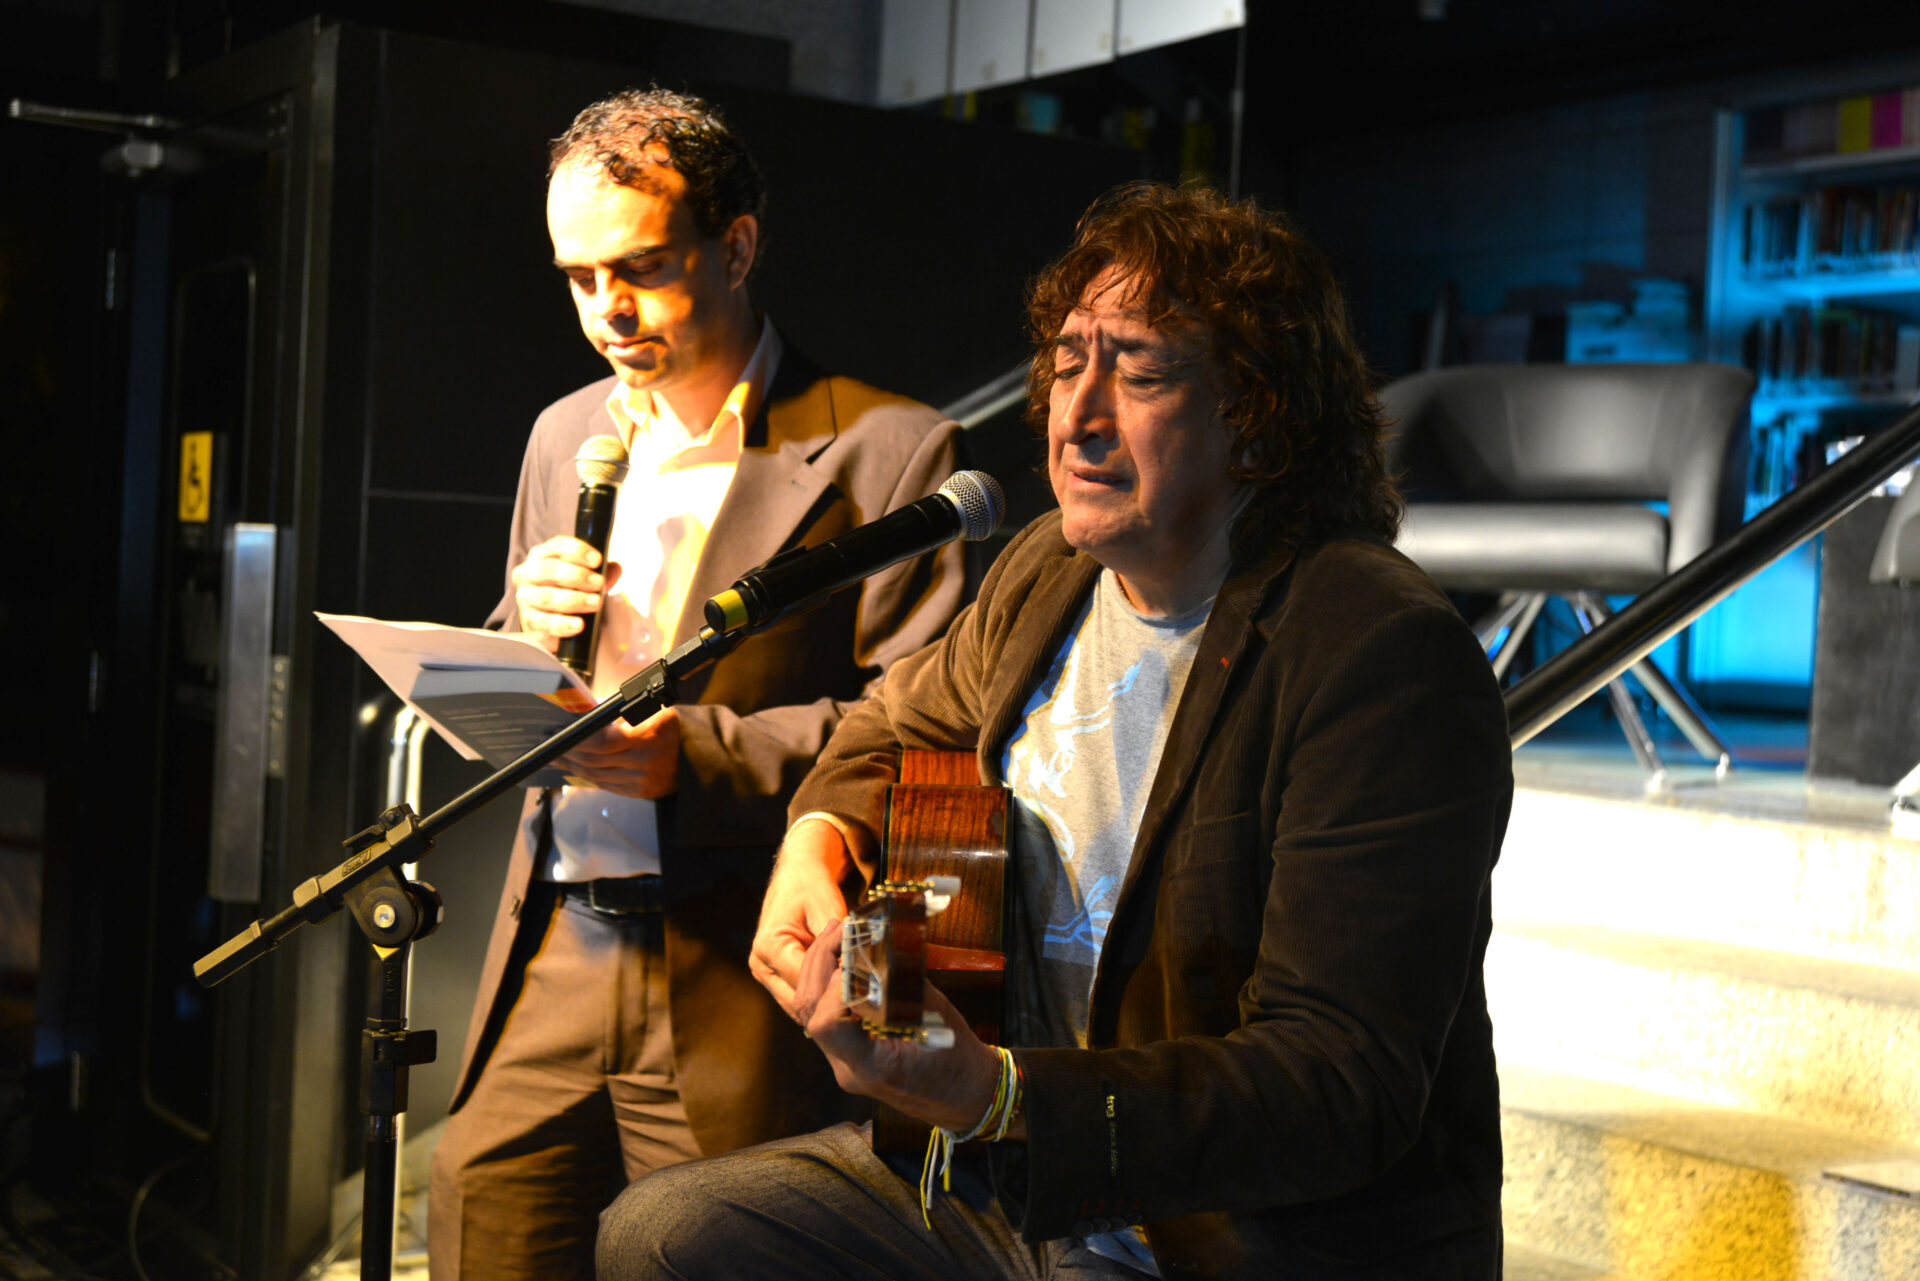 Museu da Inconfidência de Ouro Preto recebe Sarau de Música e Poesia com Toninho Horta & Petrônio Souza